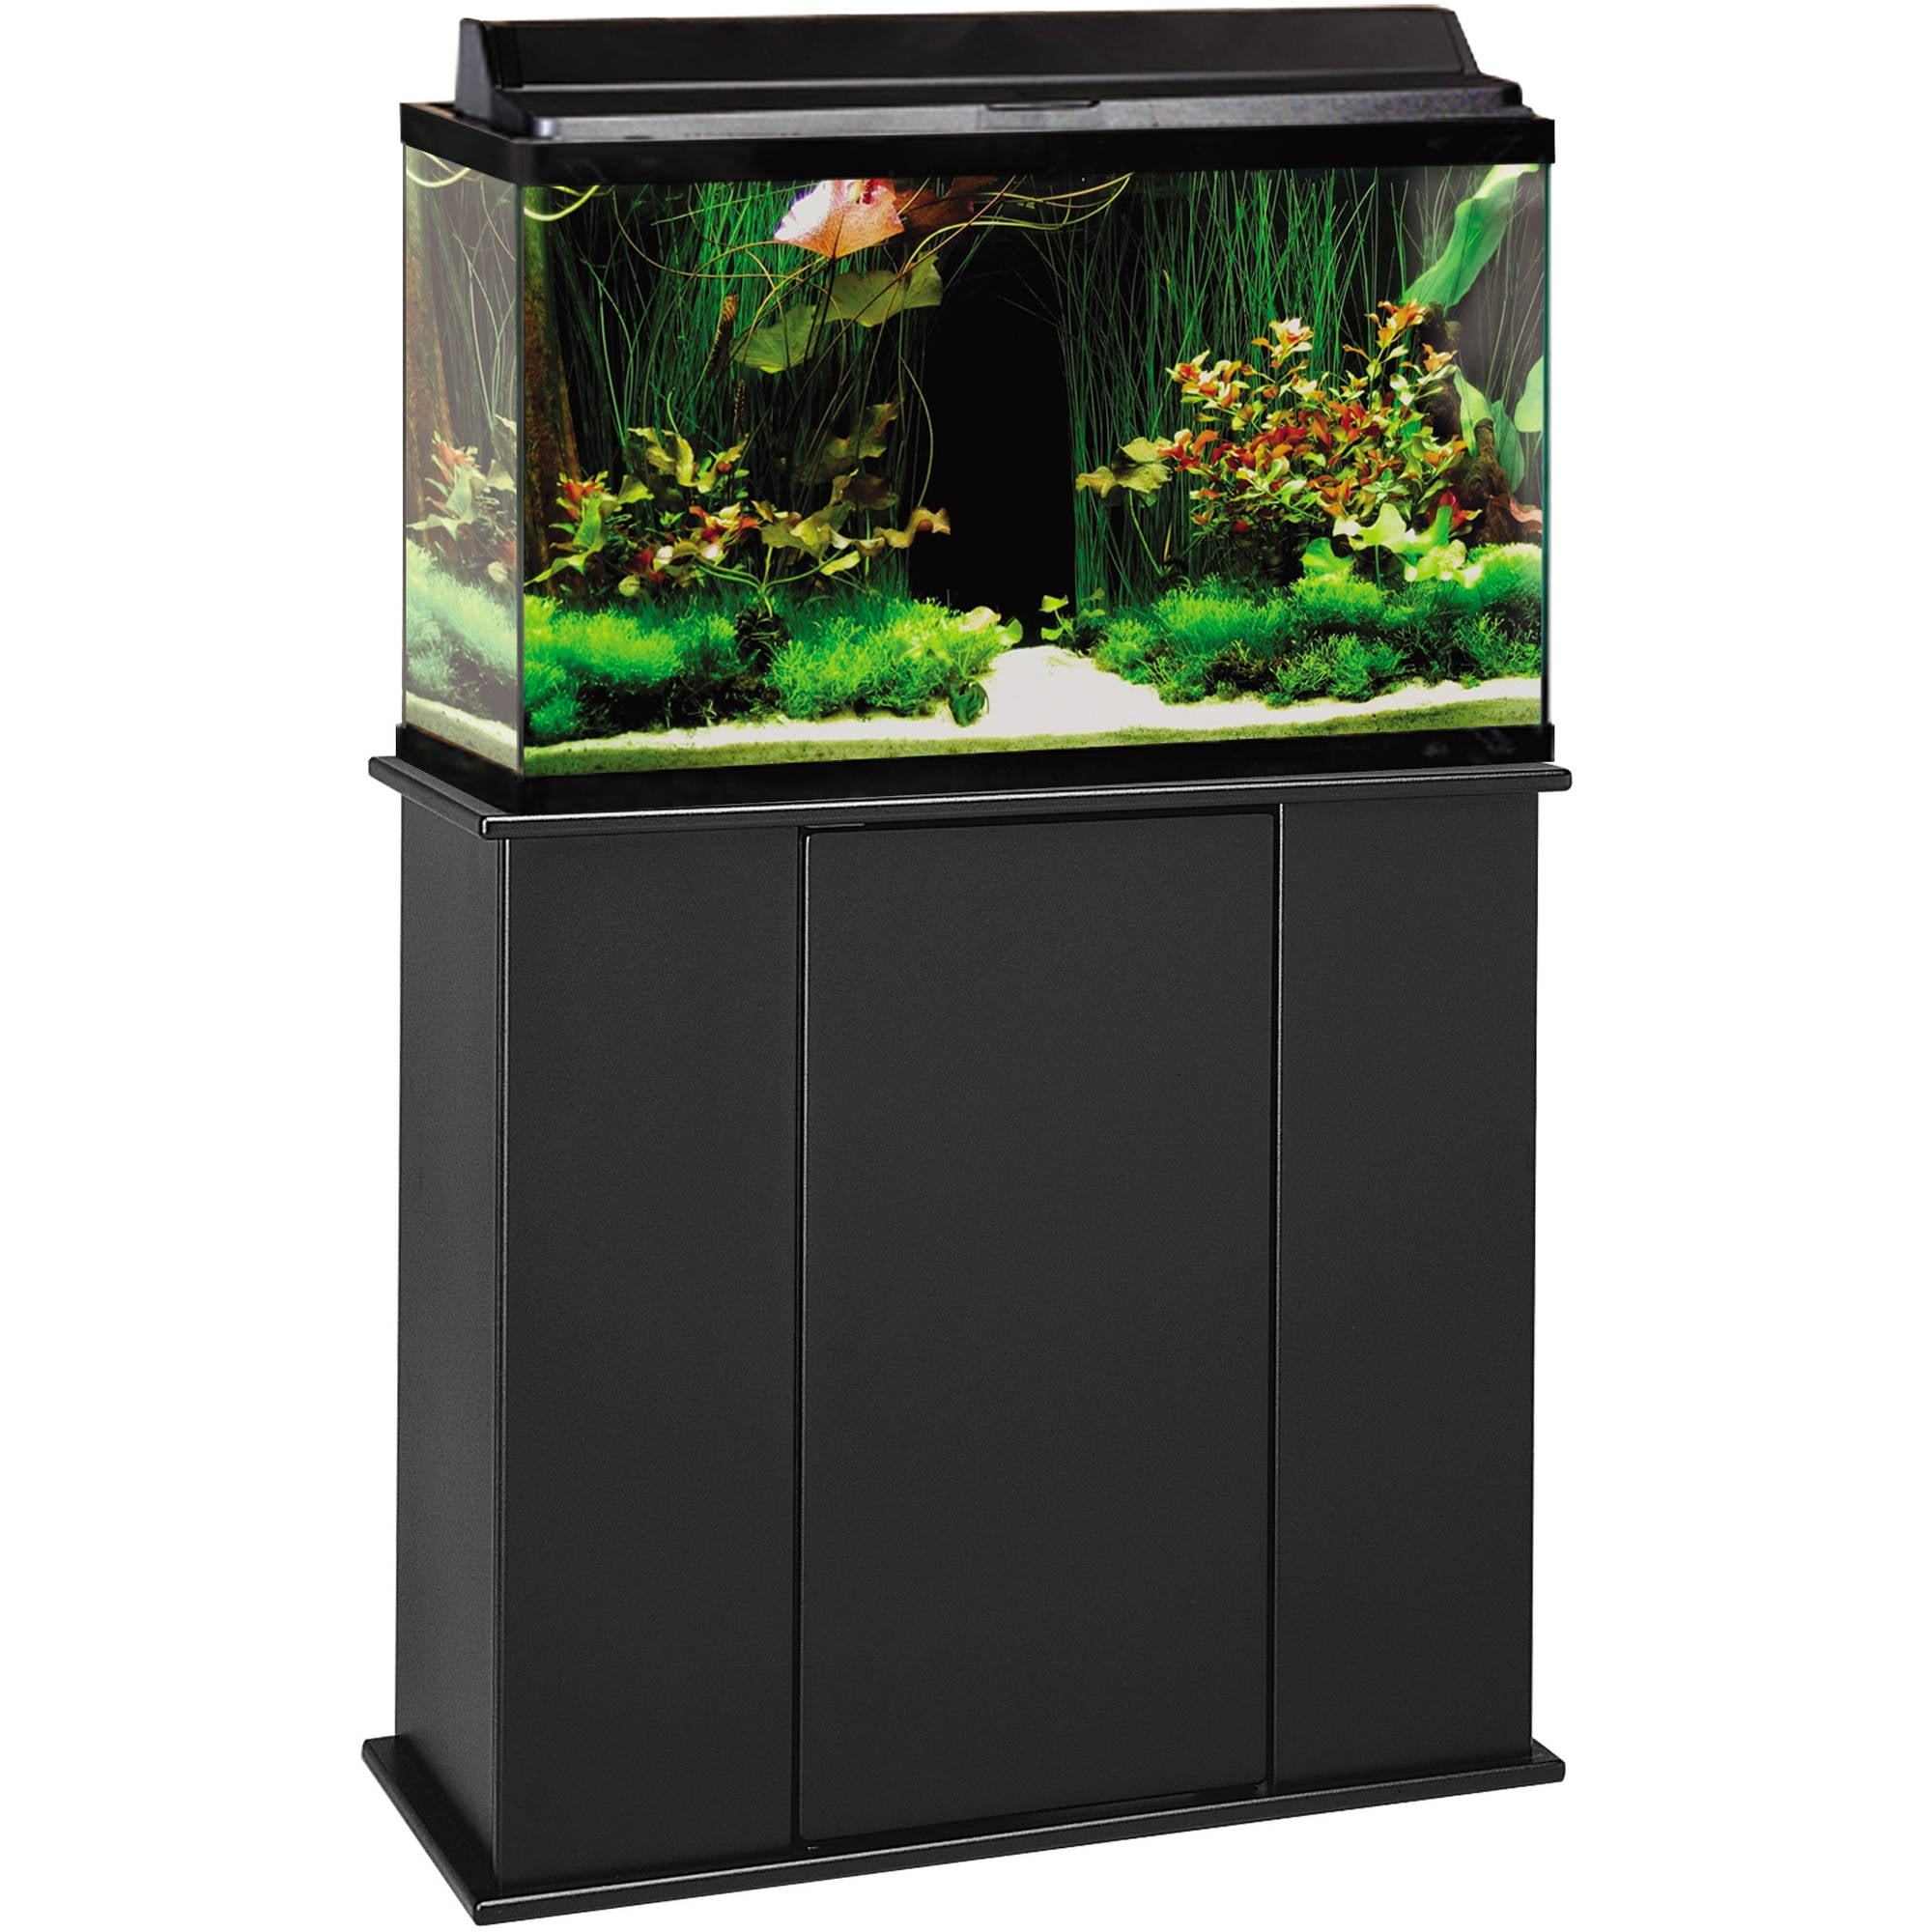 Upright Aquarium Stand, Black, 29 Gallon